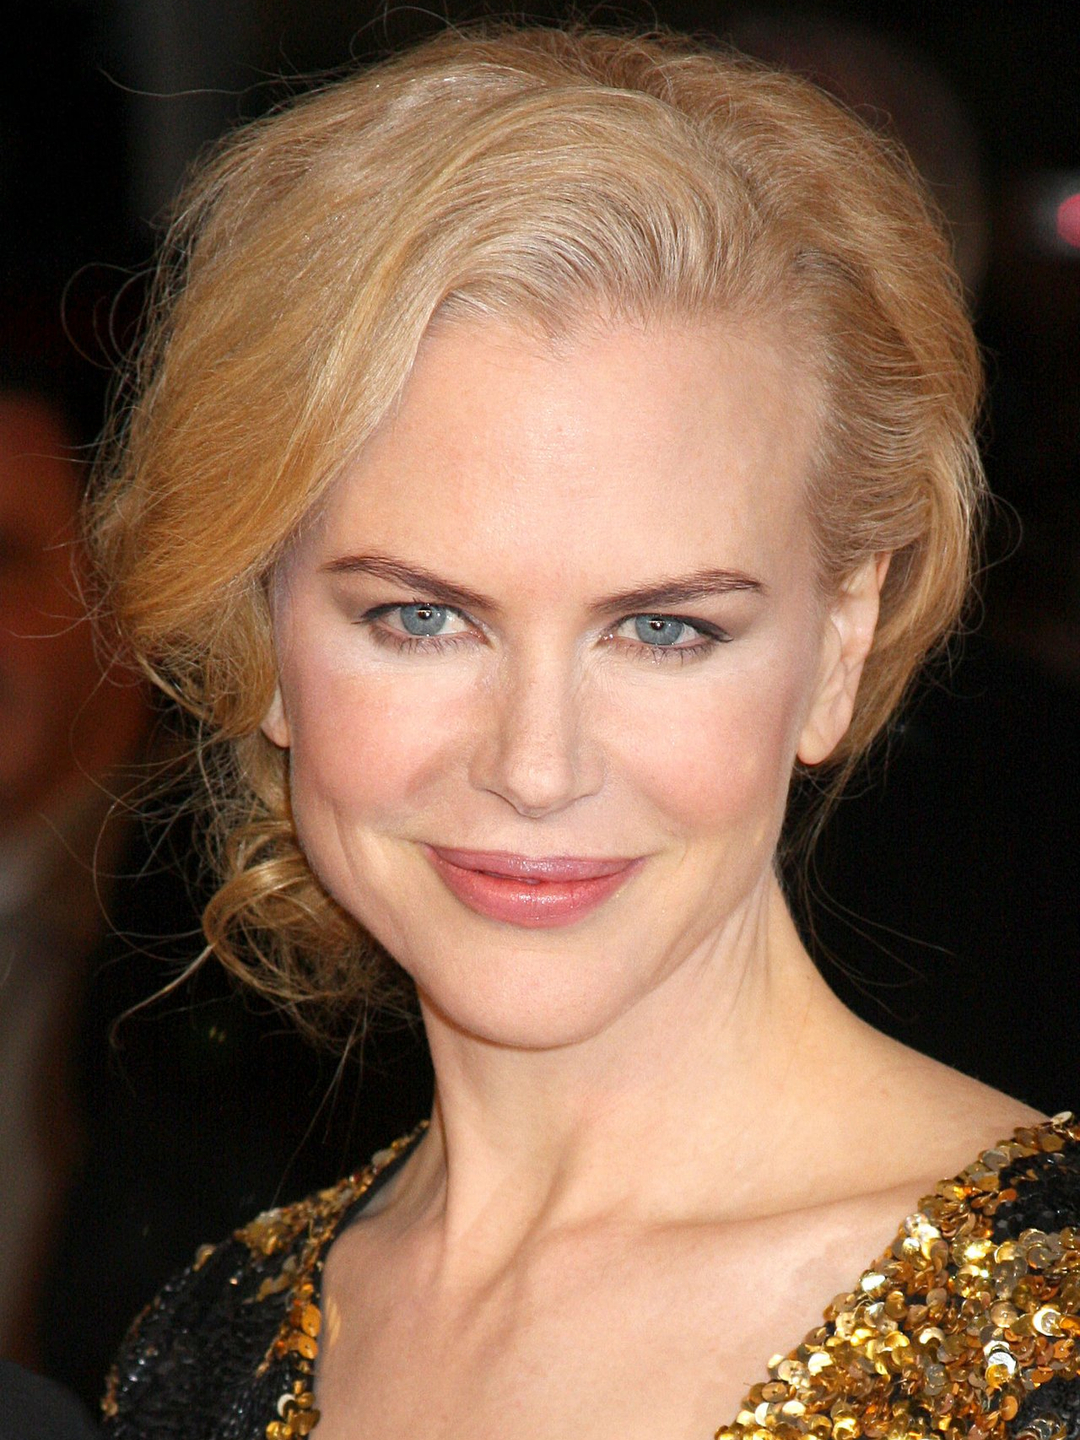 Nicole Kidman early childhood